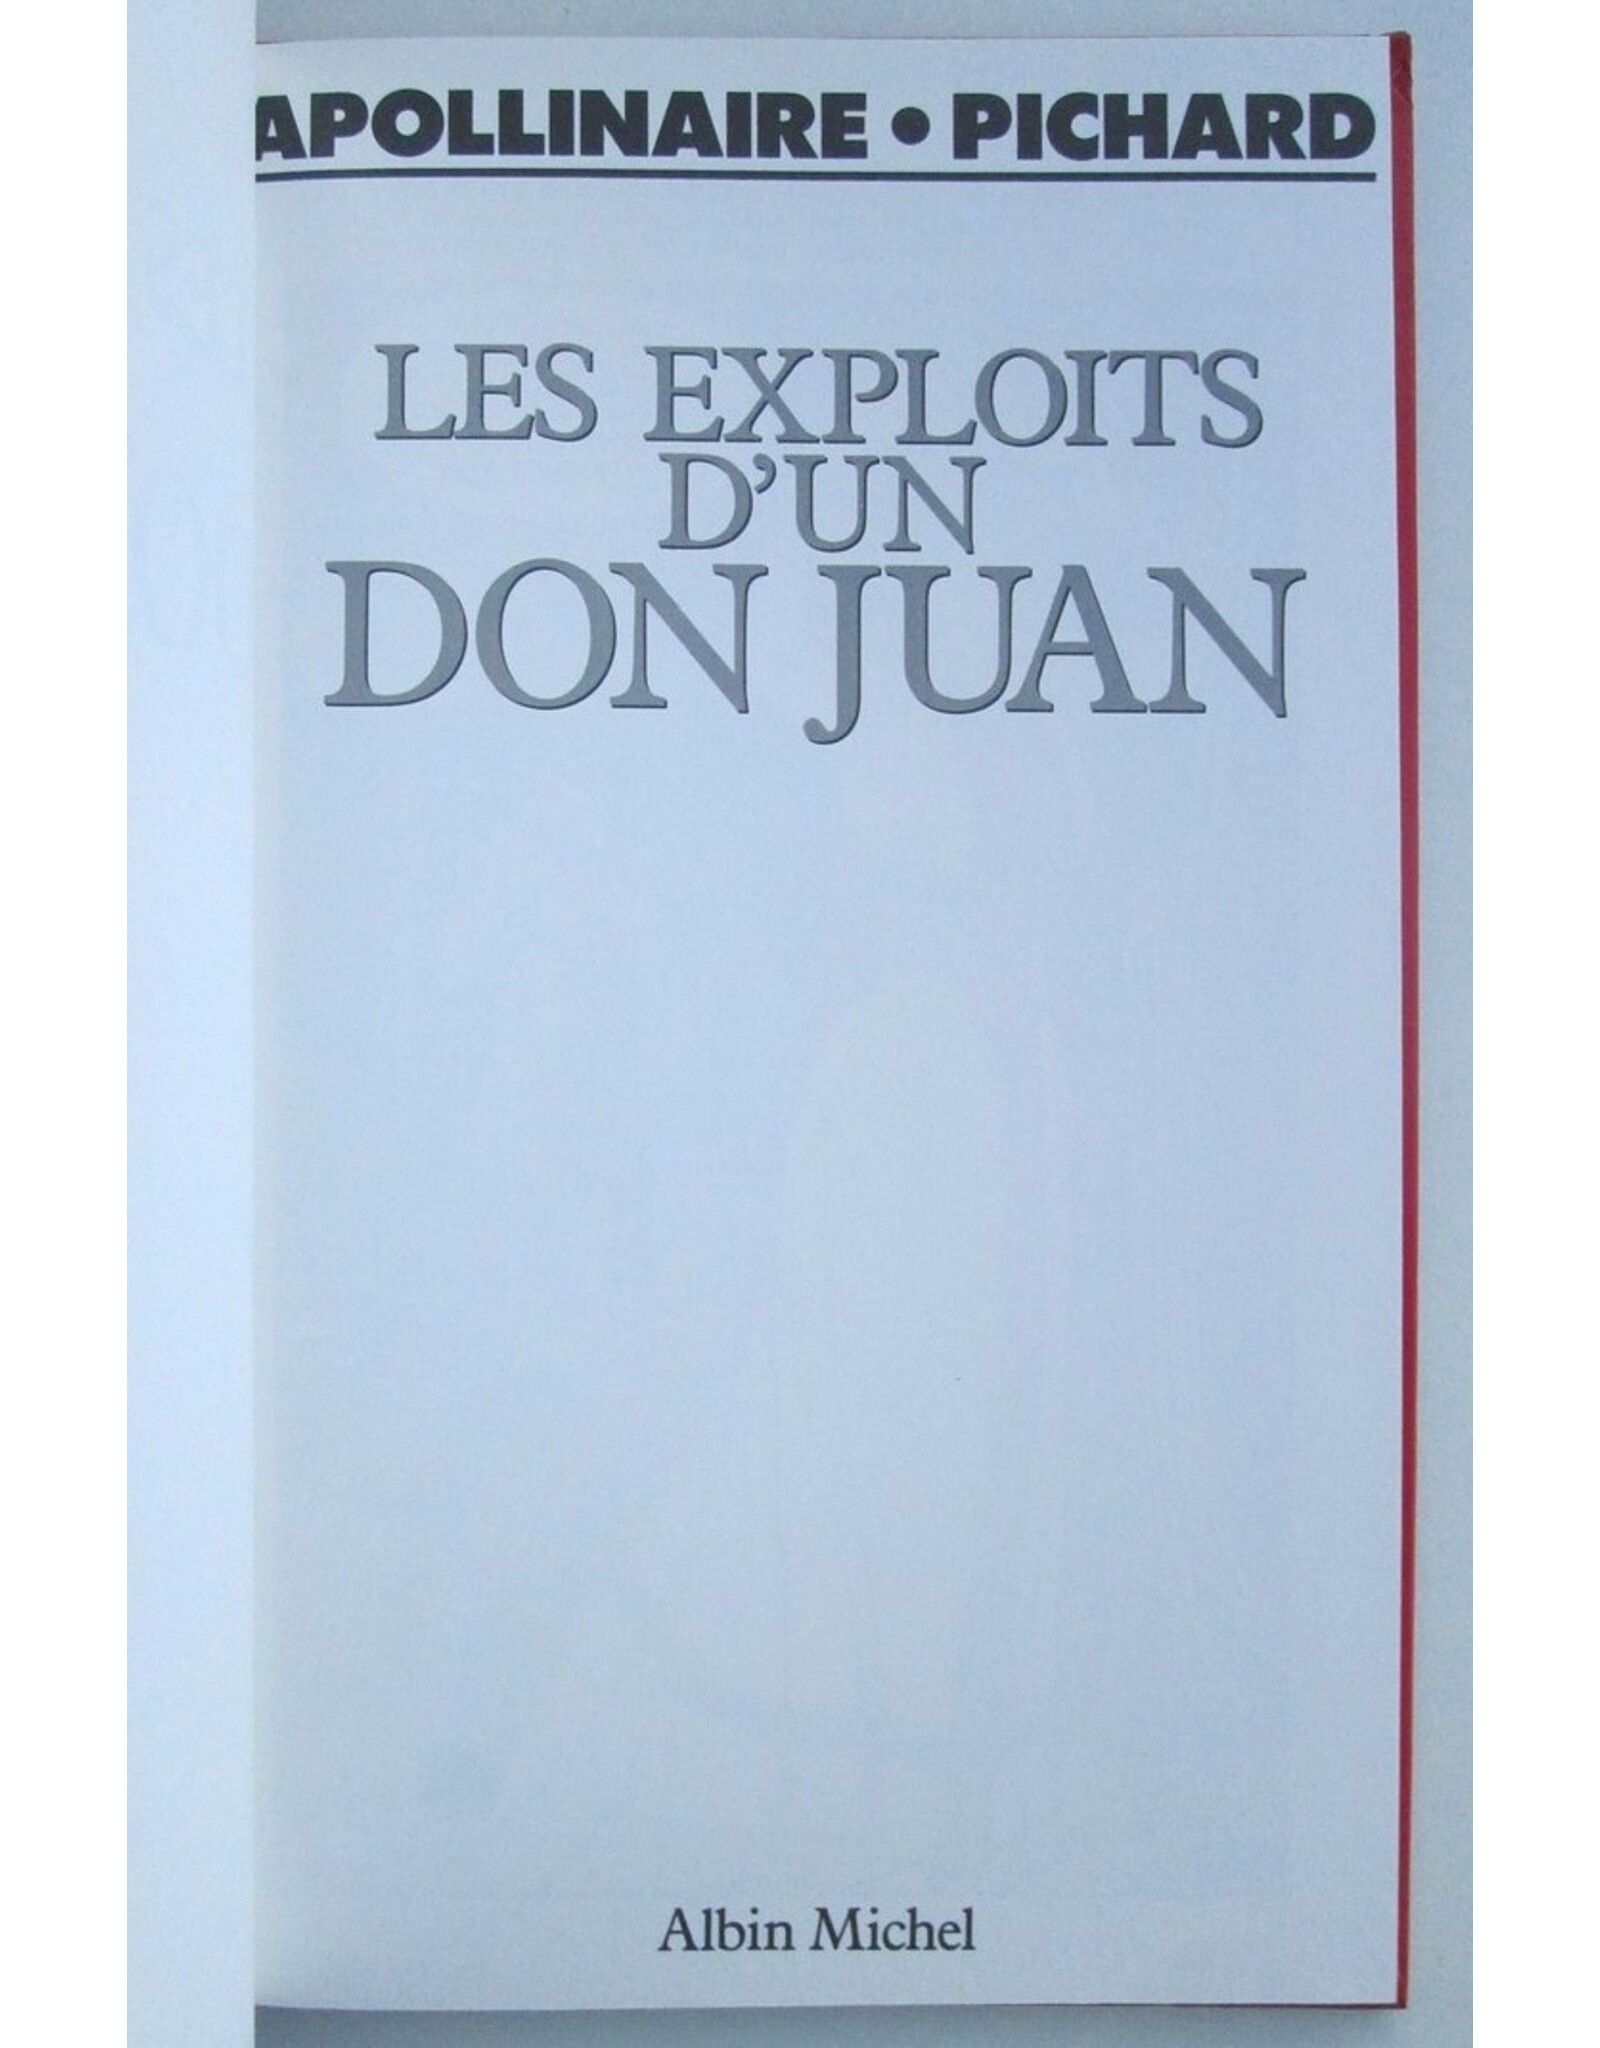 Apollinaire & Pichard - Les exploits d'un Don Juan